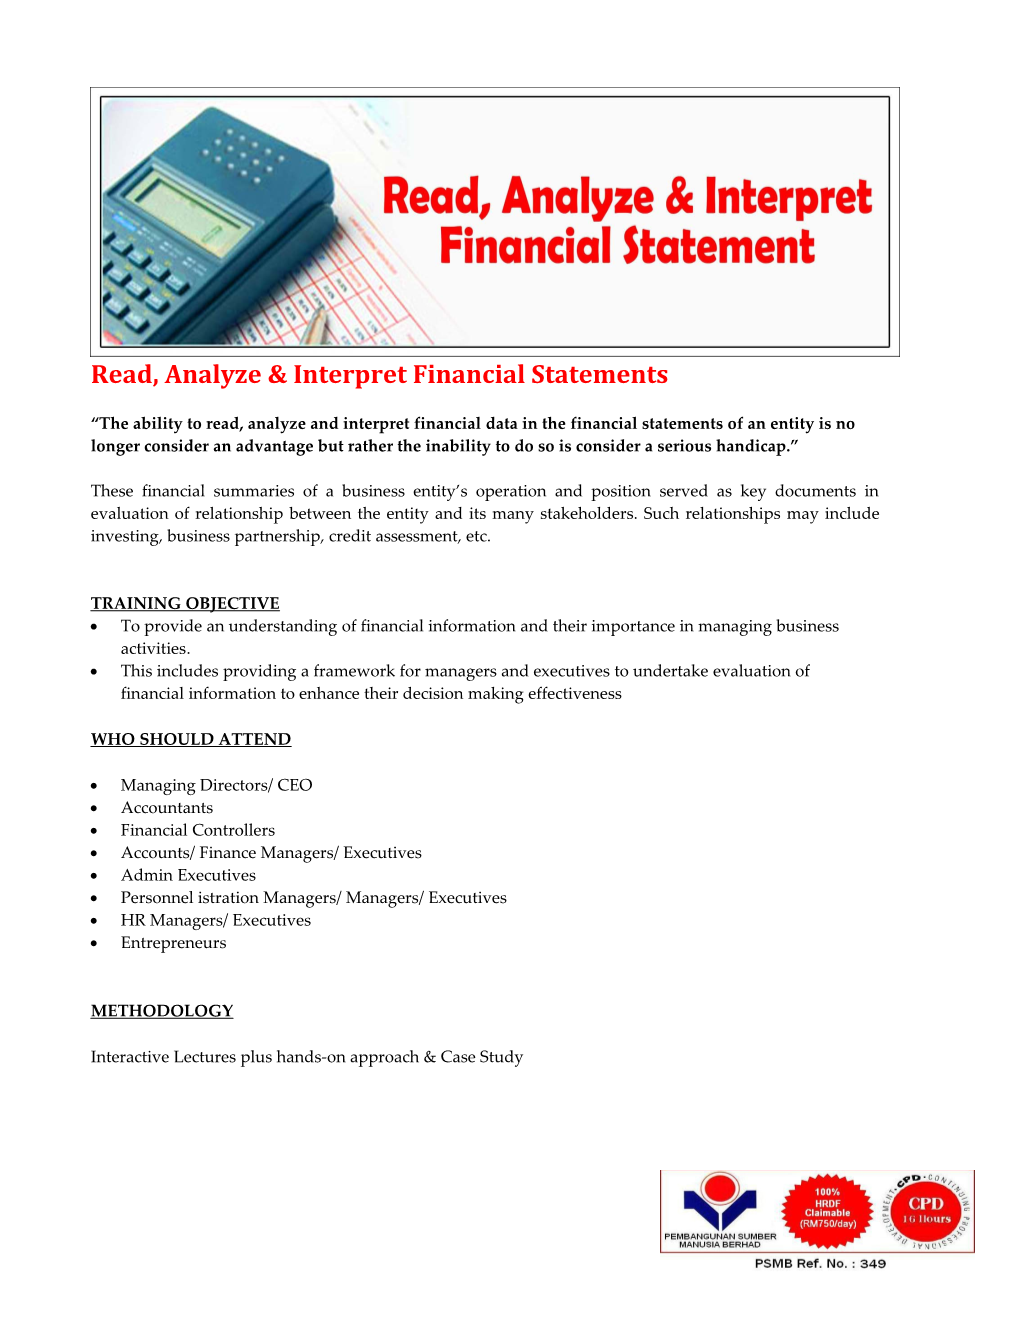 Read, Analyze & Interpret Financial Statements